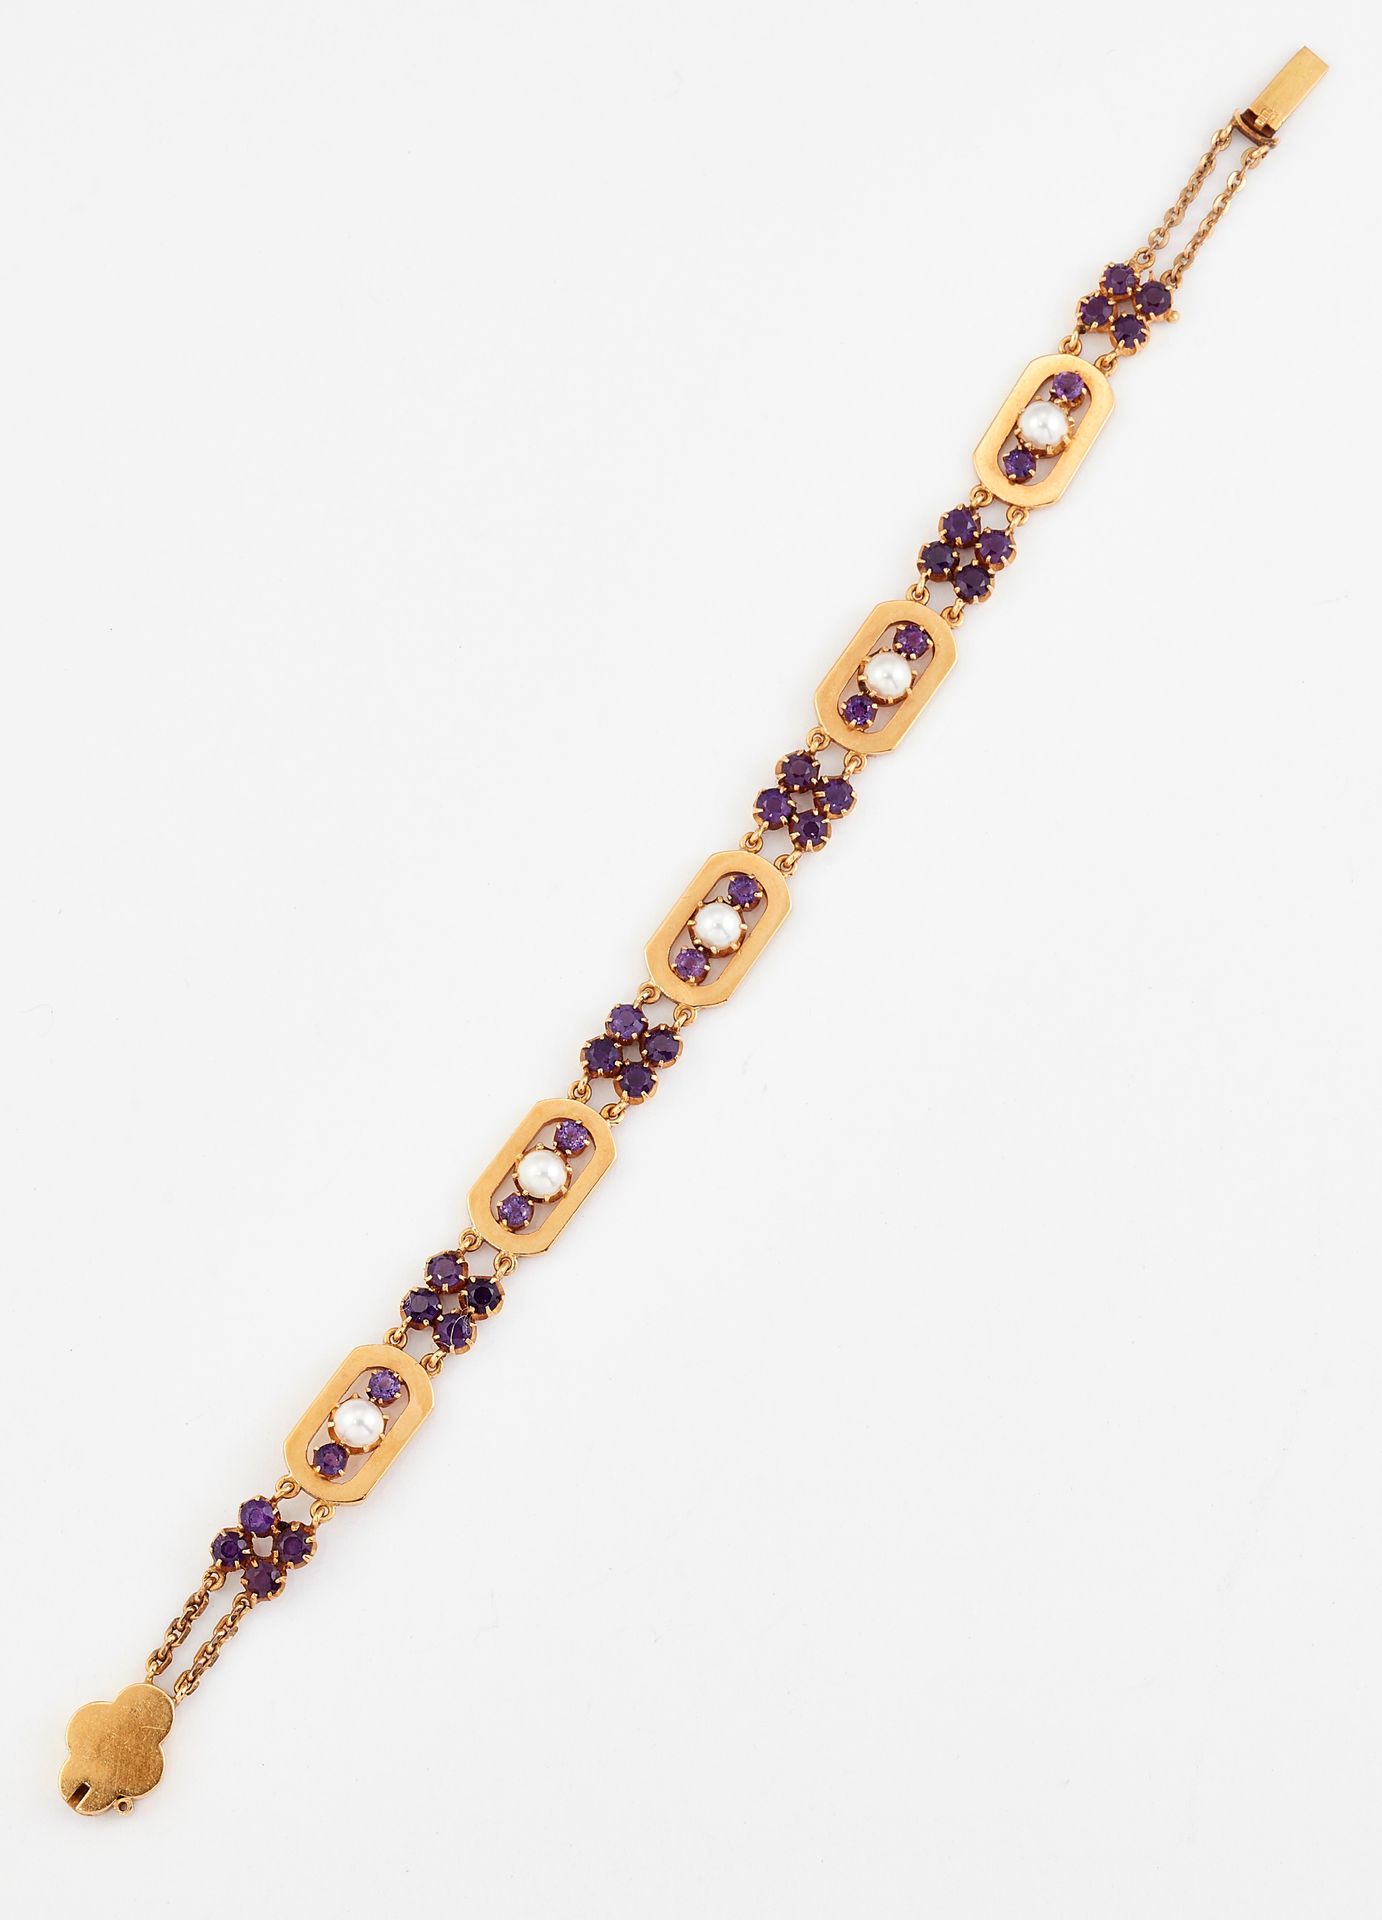 Null 紫水晶和裂开式珍珠手镯，长方形的链节上镶嵌着裂开式珍珠和圆形紫水晶，中间有多组紫水晶。长17.5厘米，宽8厘米，重14.9克200400120整体状况&hellip;